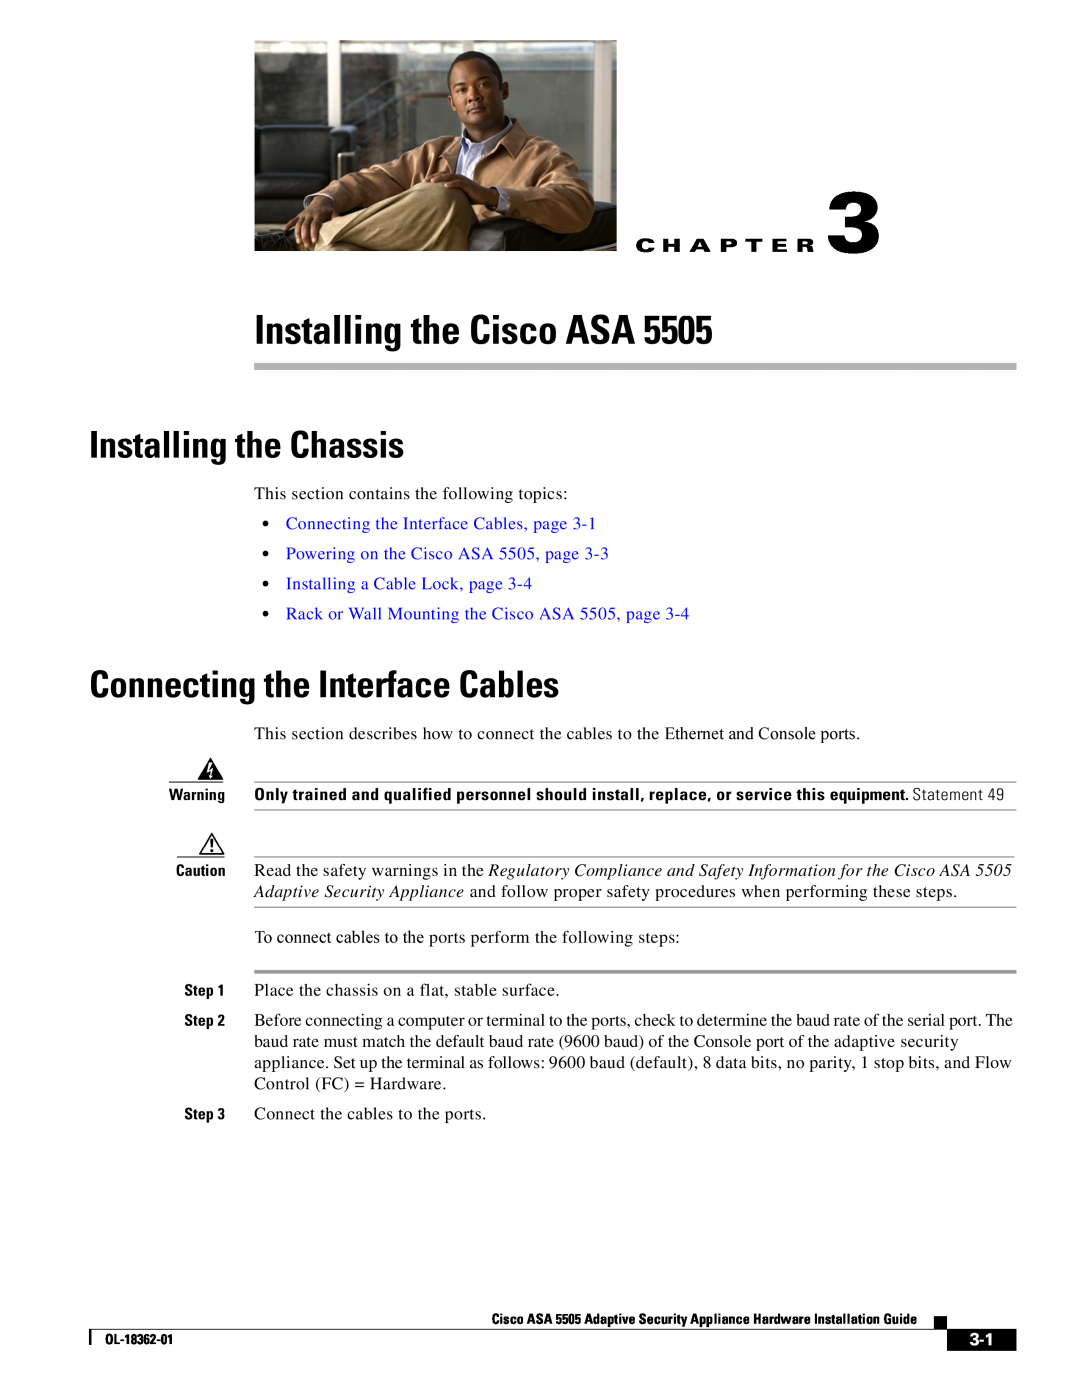 Cisco Systems ASA5505K8RF Installing the Cisco ASA, Installing the Chassis, Connecting the Interface Cables, C H A P T E R 